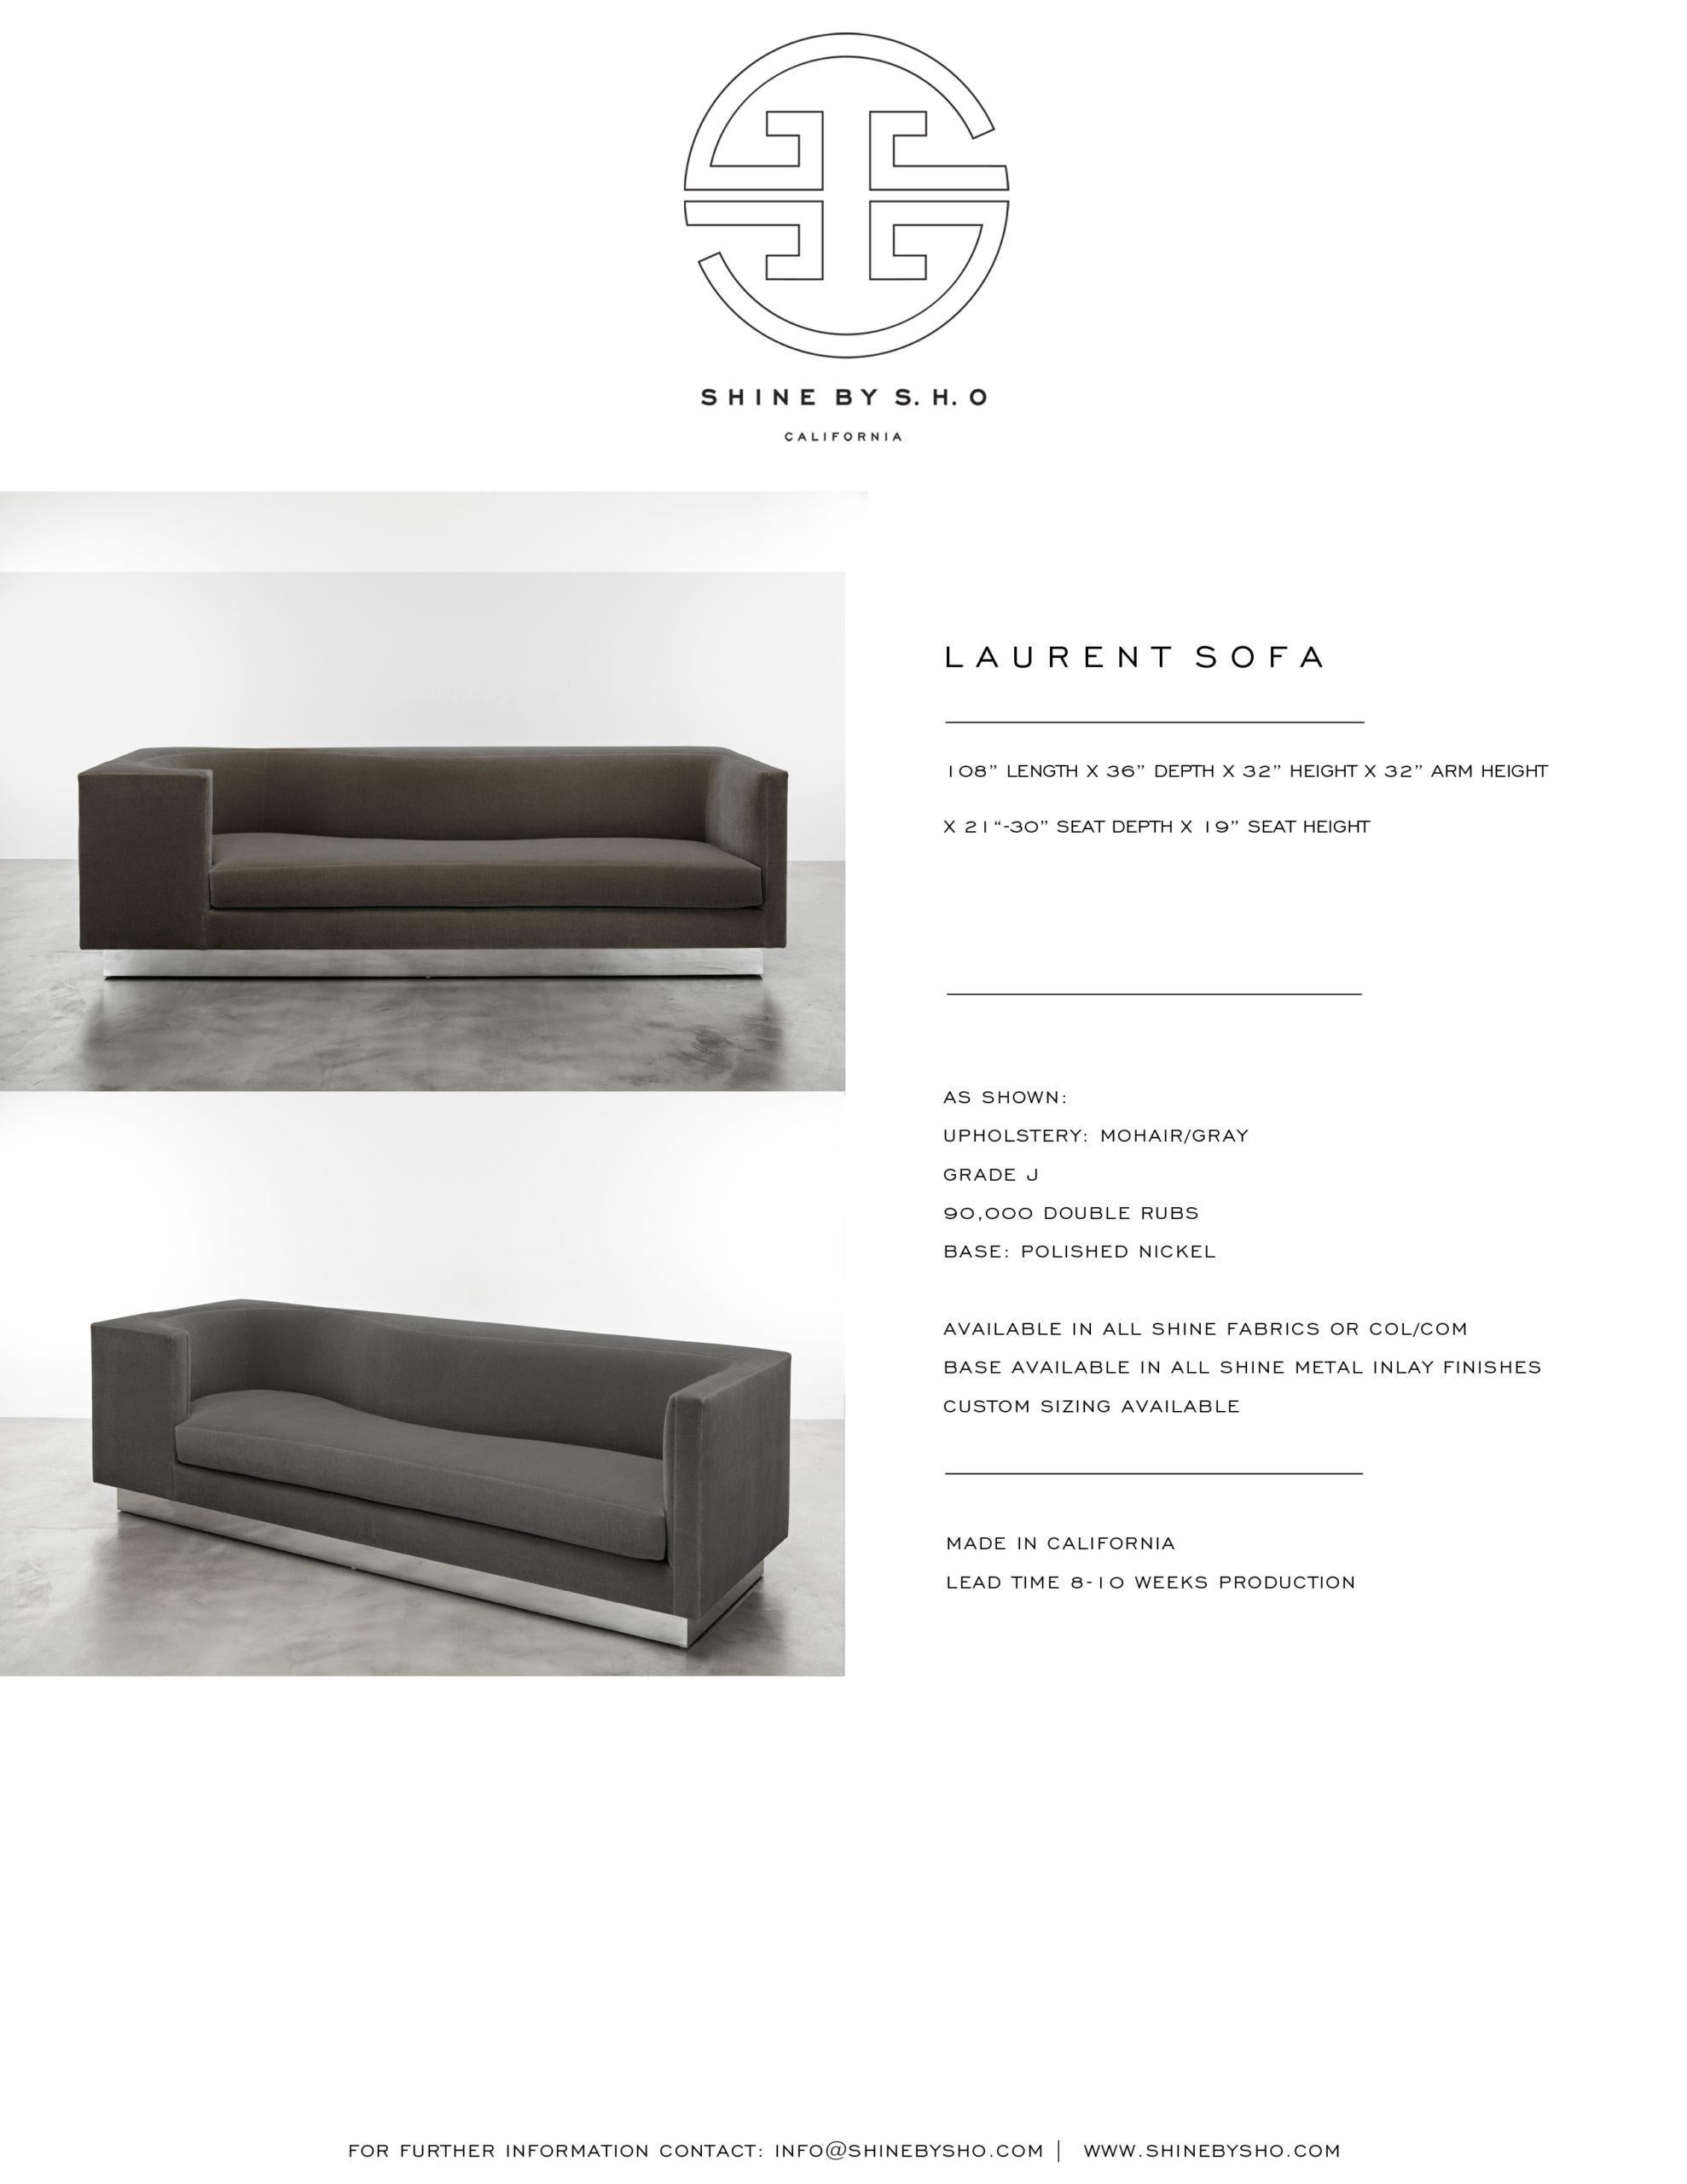 American LAURENT SOFA - Modern Asymmetrical Sofa in Black Glam Velvet